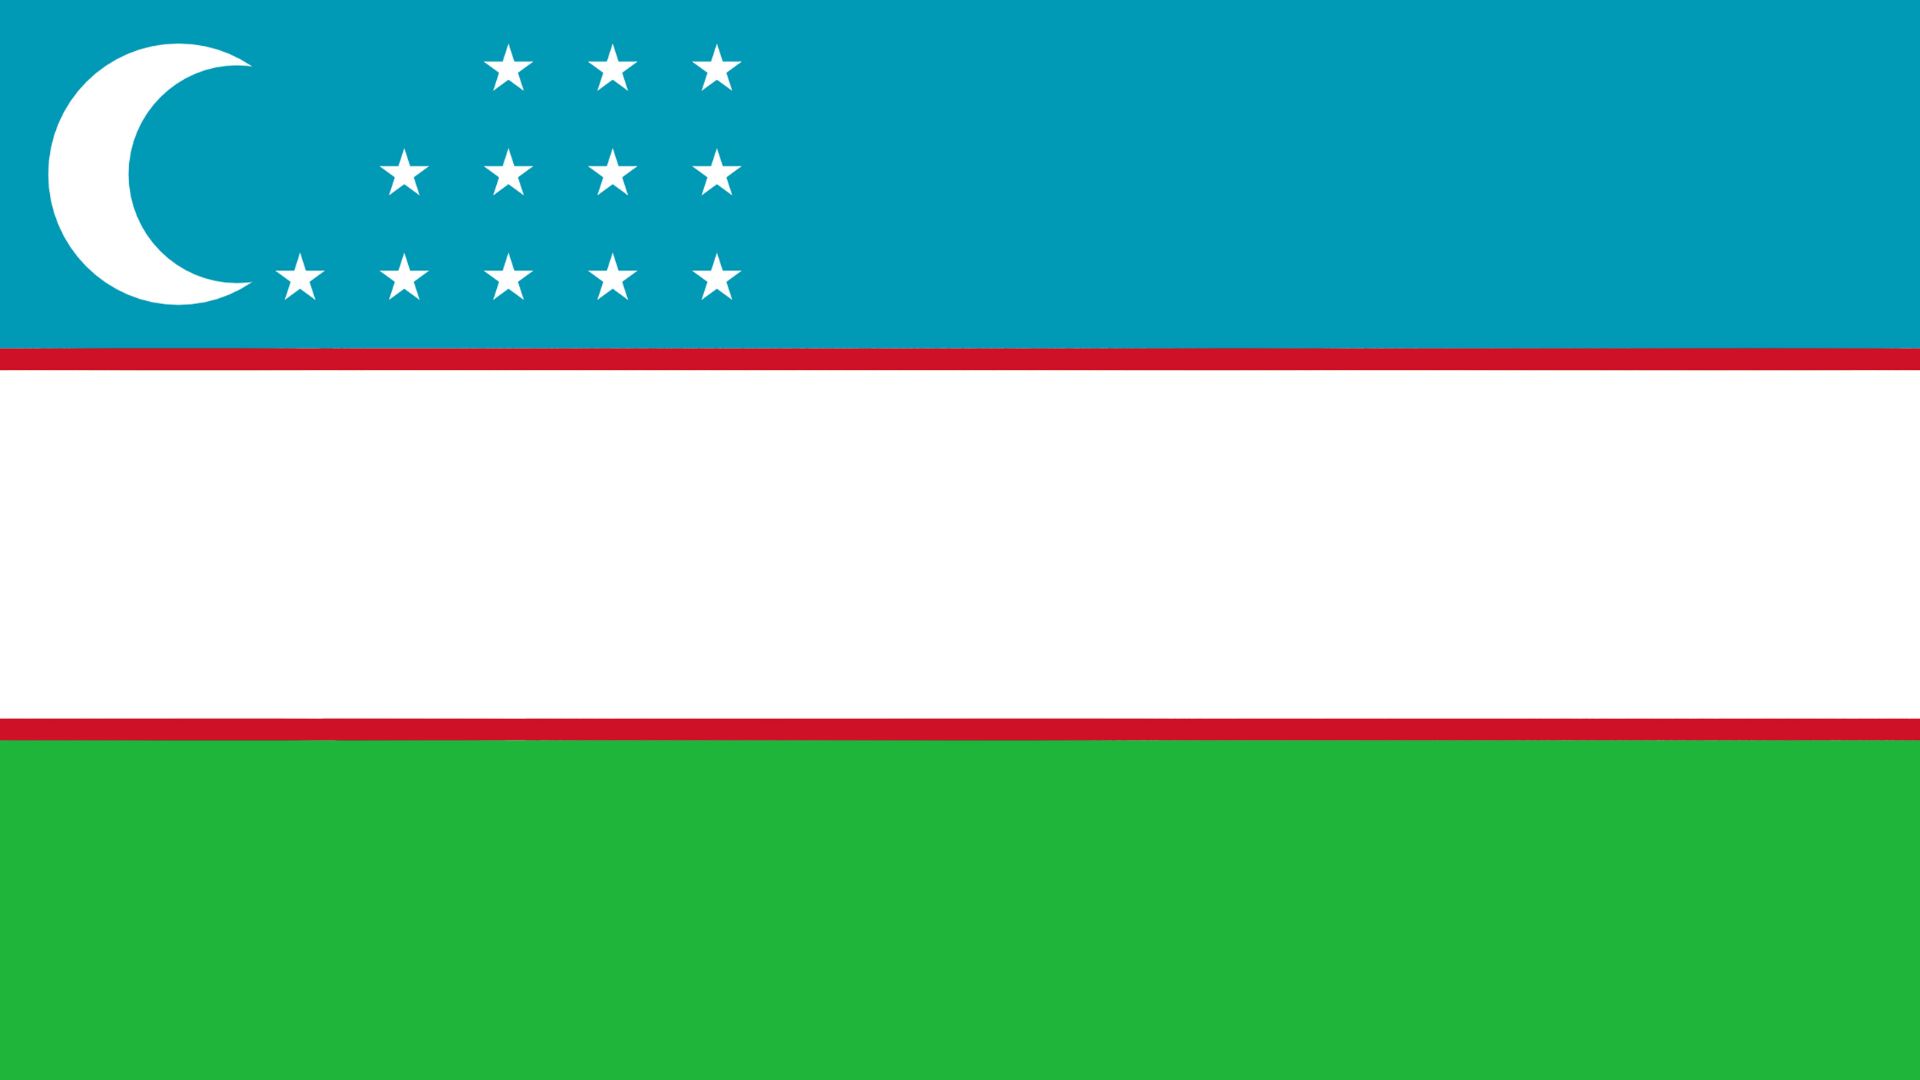 A Bandeira do Uzbequistão possui a lua crescente com 12 estrelas ao seu lado, o que representa o zodíaco. Suas cores são o azul claro, o branco e o verde.